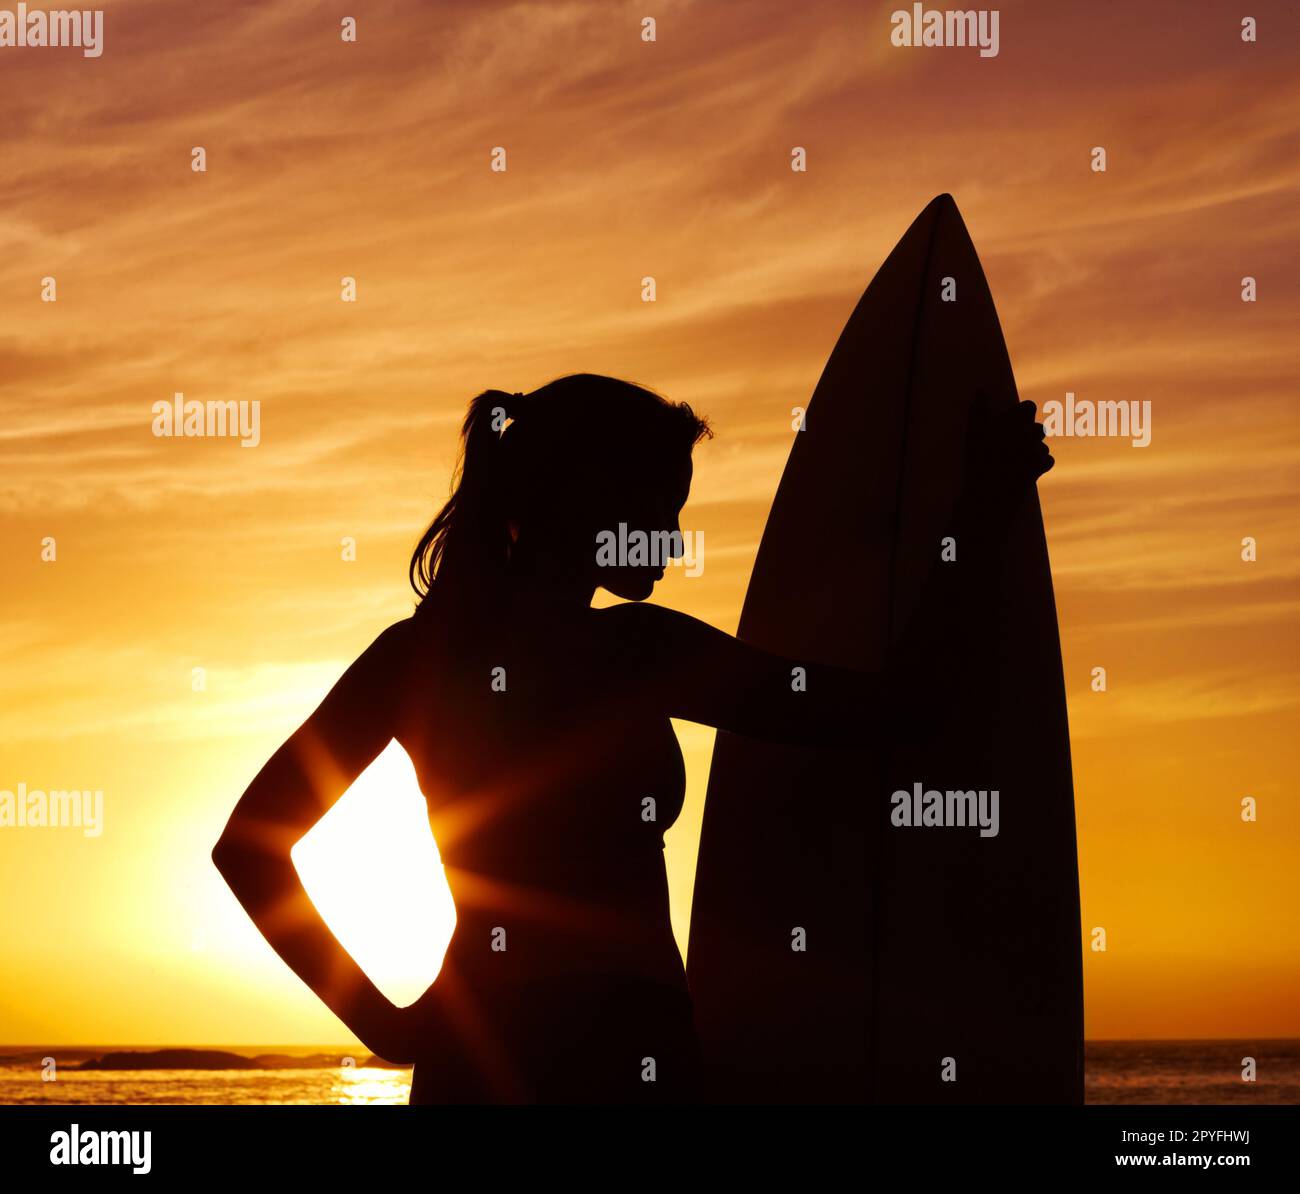 Frau mit Surfbrett vor dem malerischen Sonnenuntergang - Silhouette. Malerischer Blick auf eine Frau mit Surfbrett bei Sonnenuntergang - Silhouette. Stockfoto